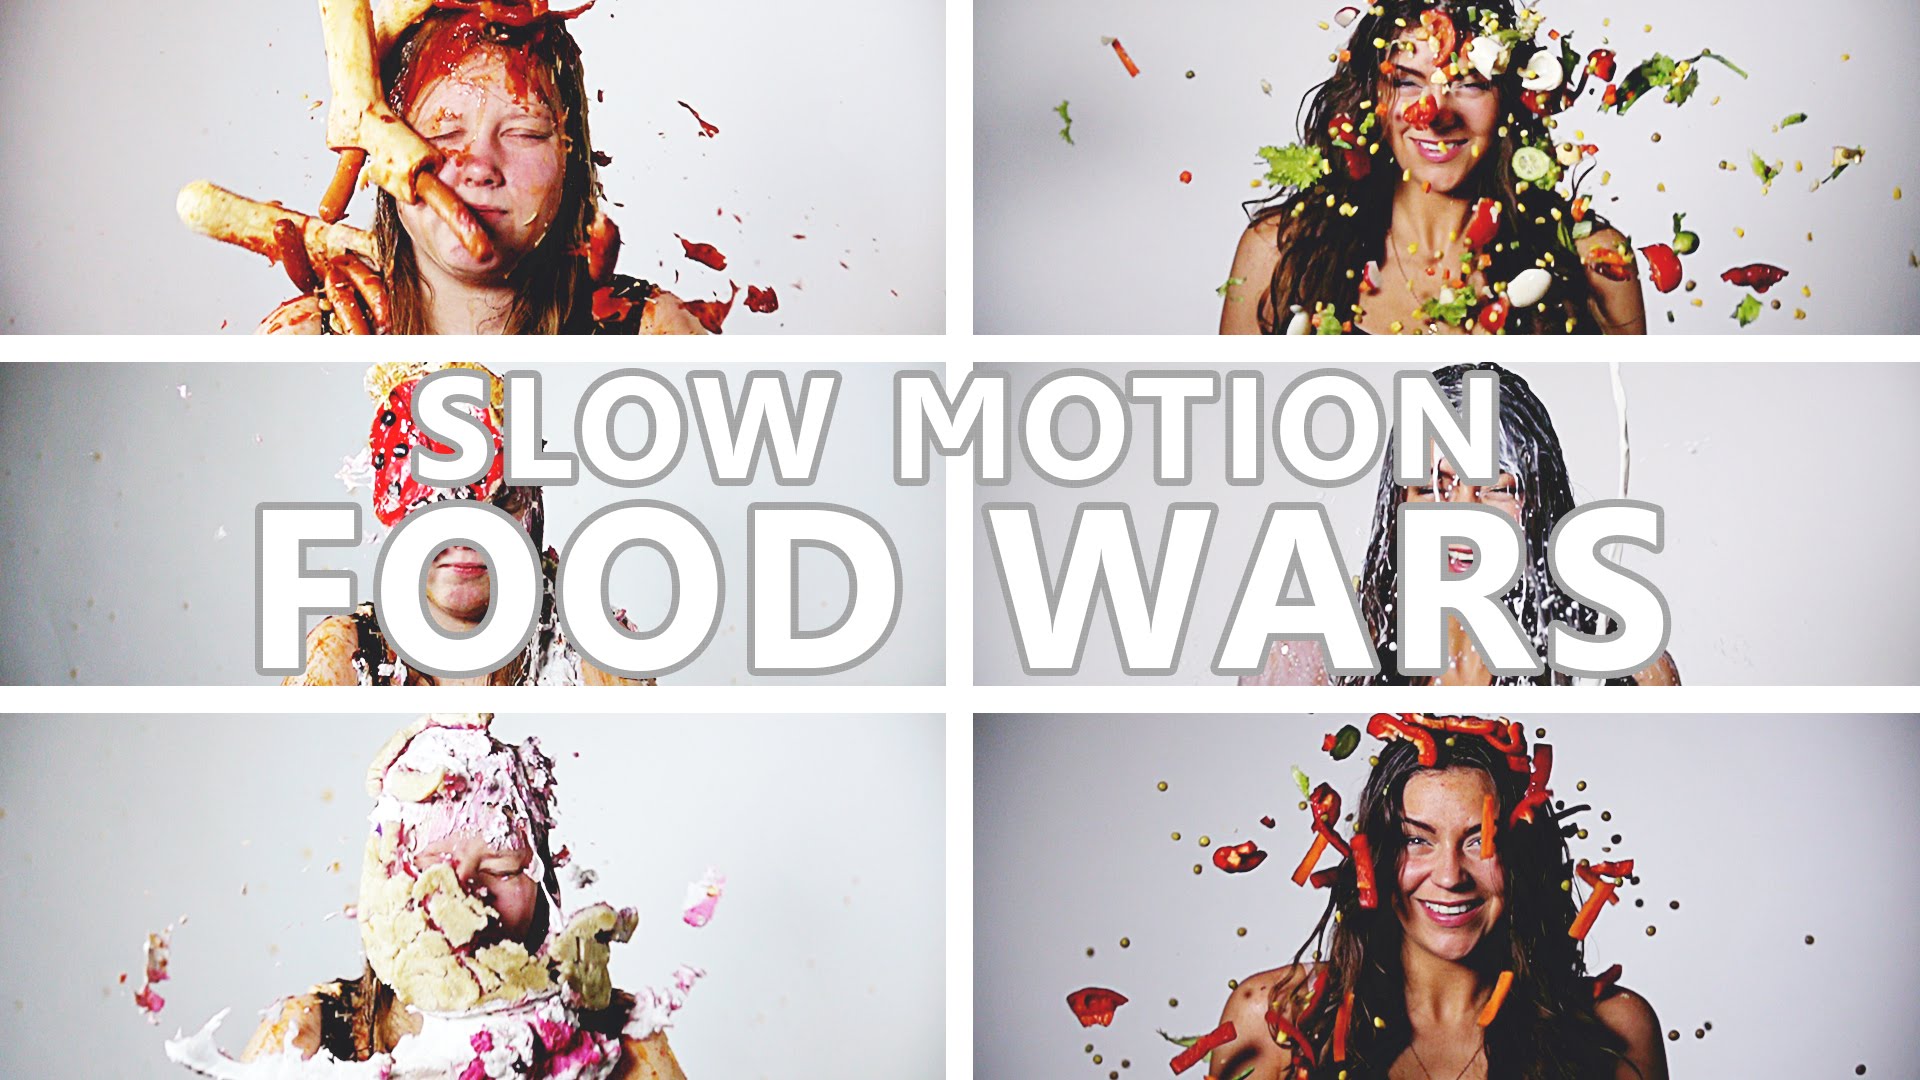 VIDEO: Super! Latvieša veidots video – “Ēdienu kari” palēninājumā! (Slow motion food wars)